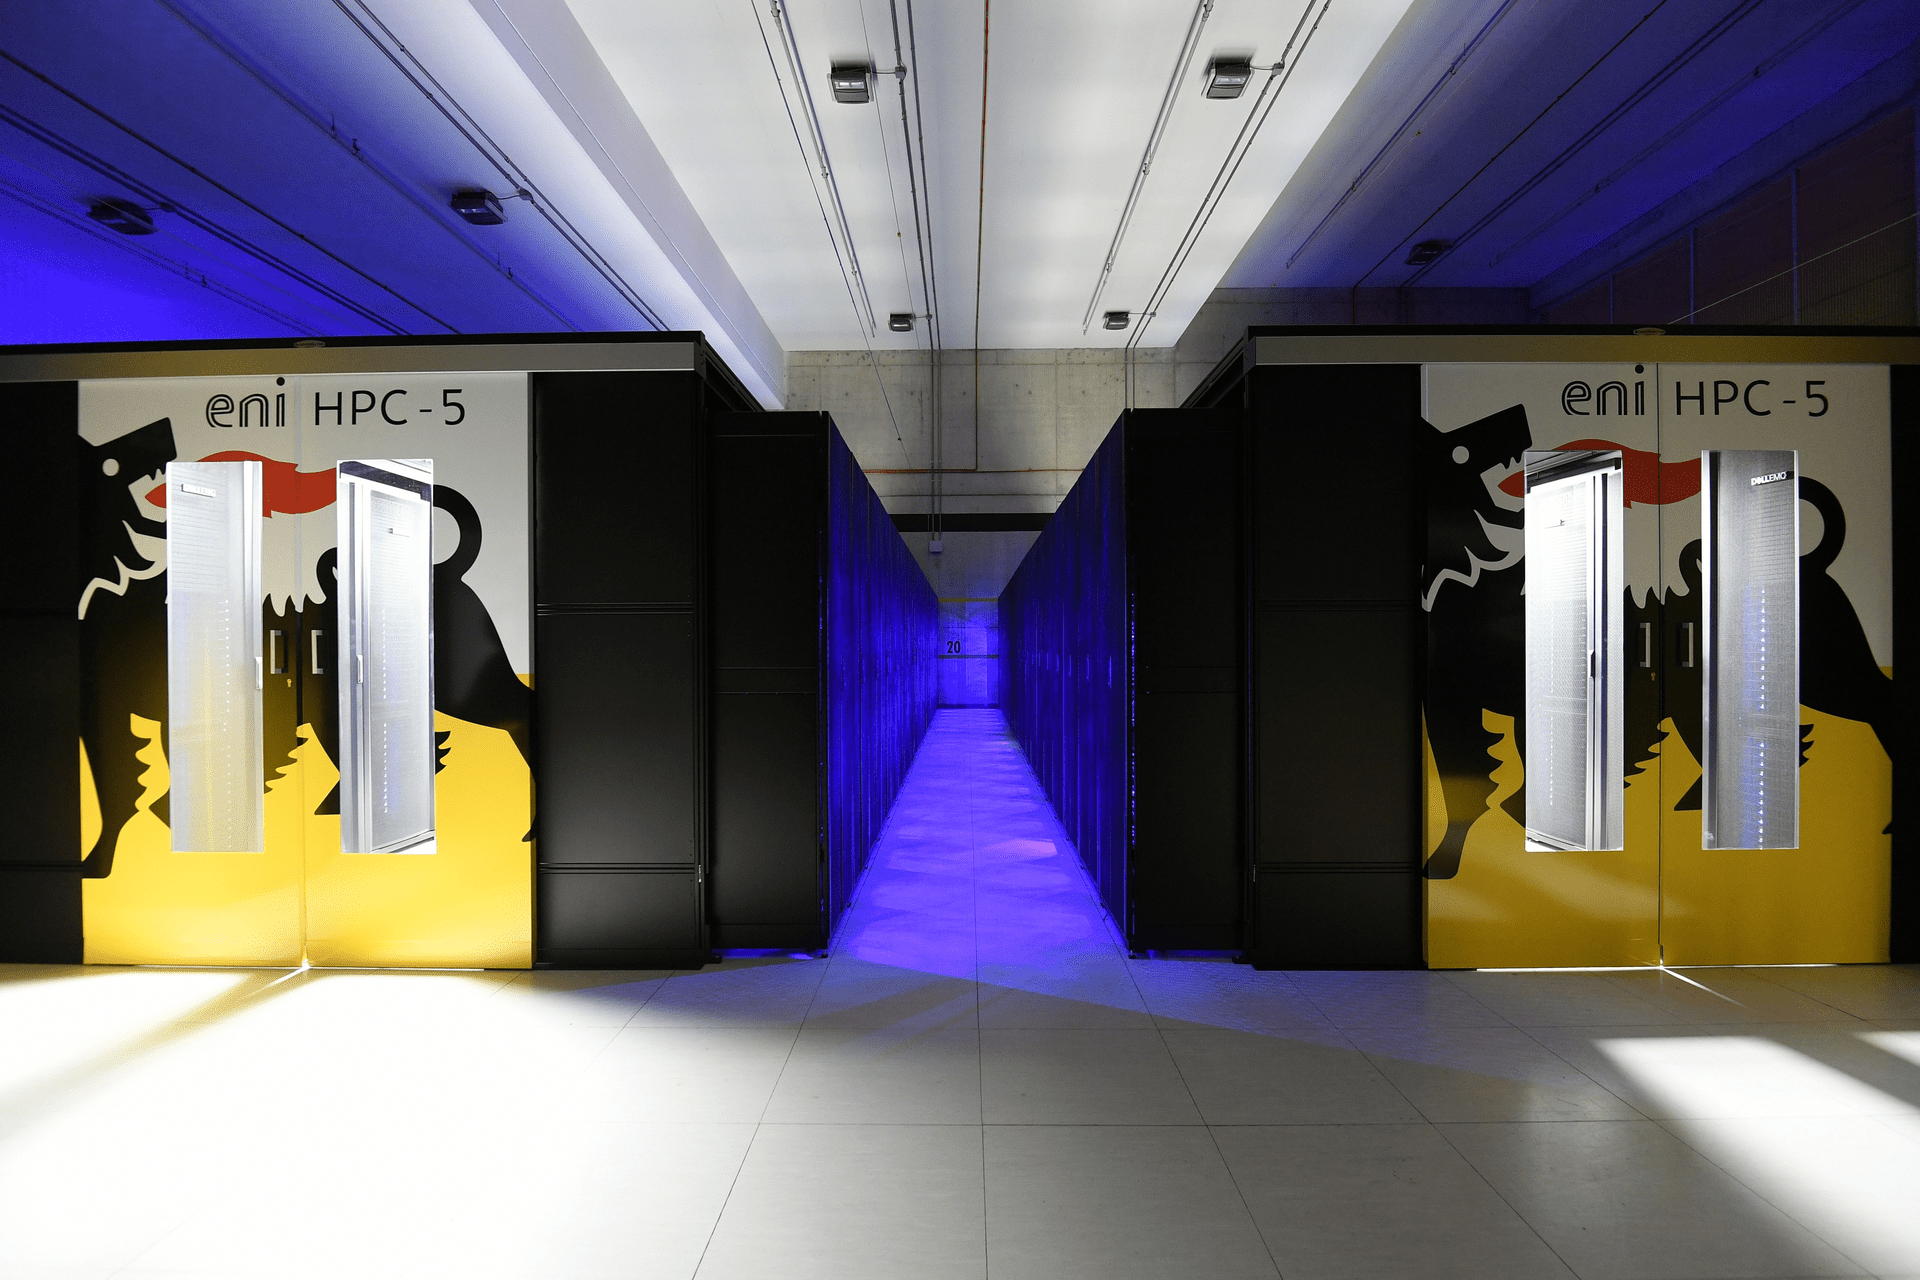 Il supercomputer HPC-5 presso il CINECA di Casalecchio di Reno (Bologna) utilizzato dall'ENI